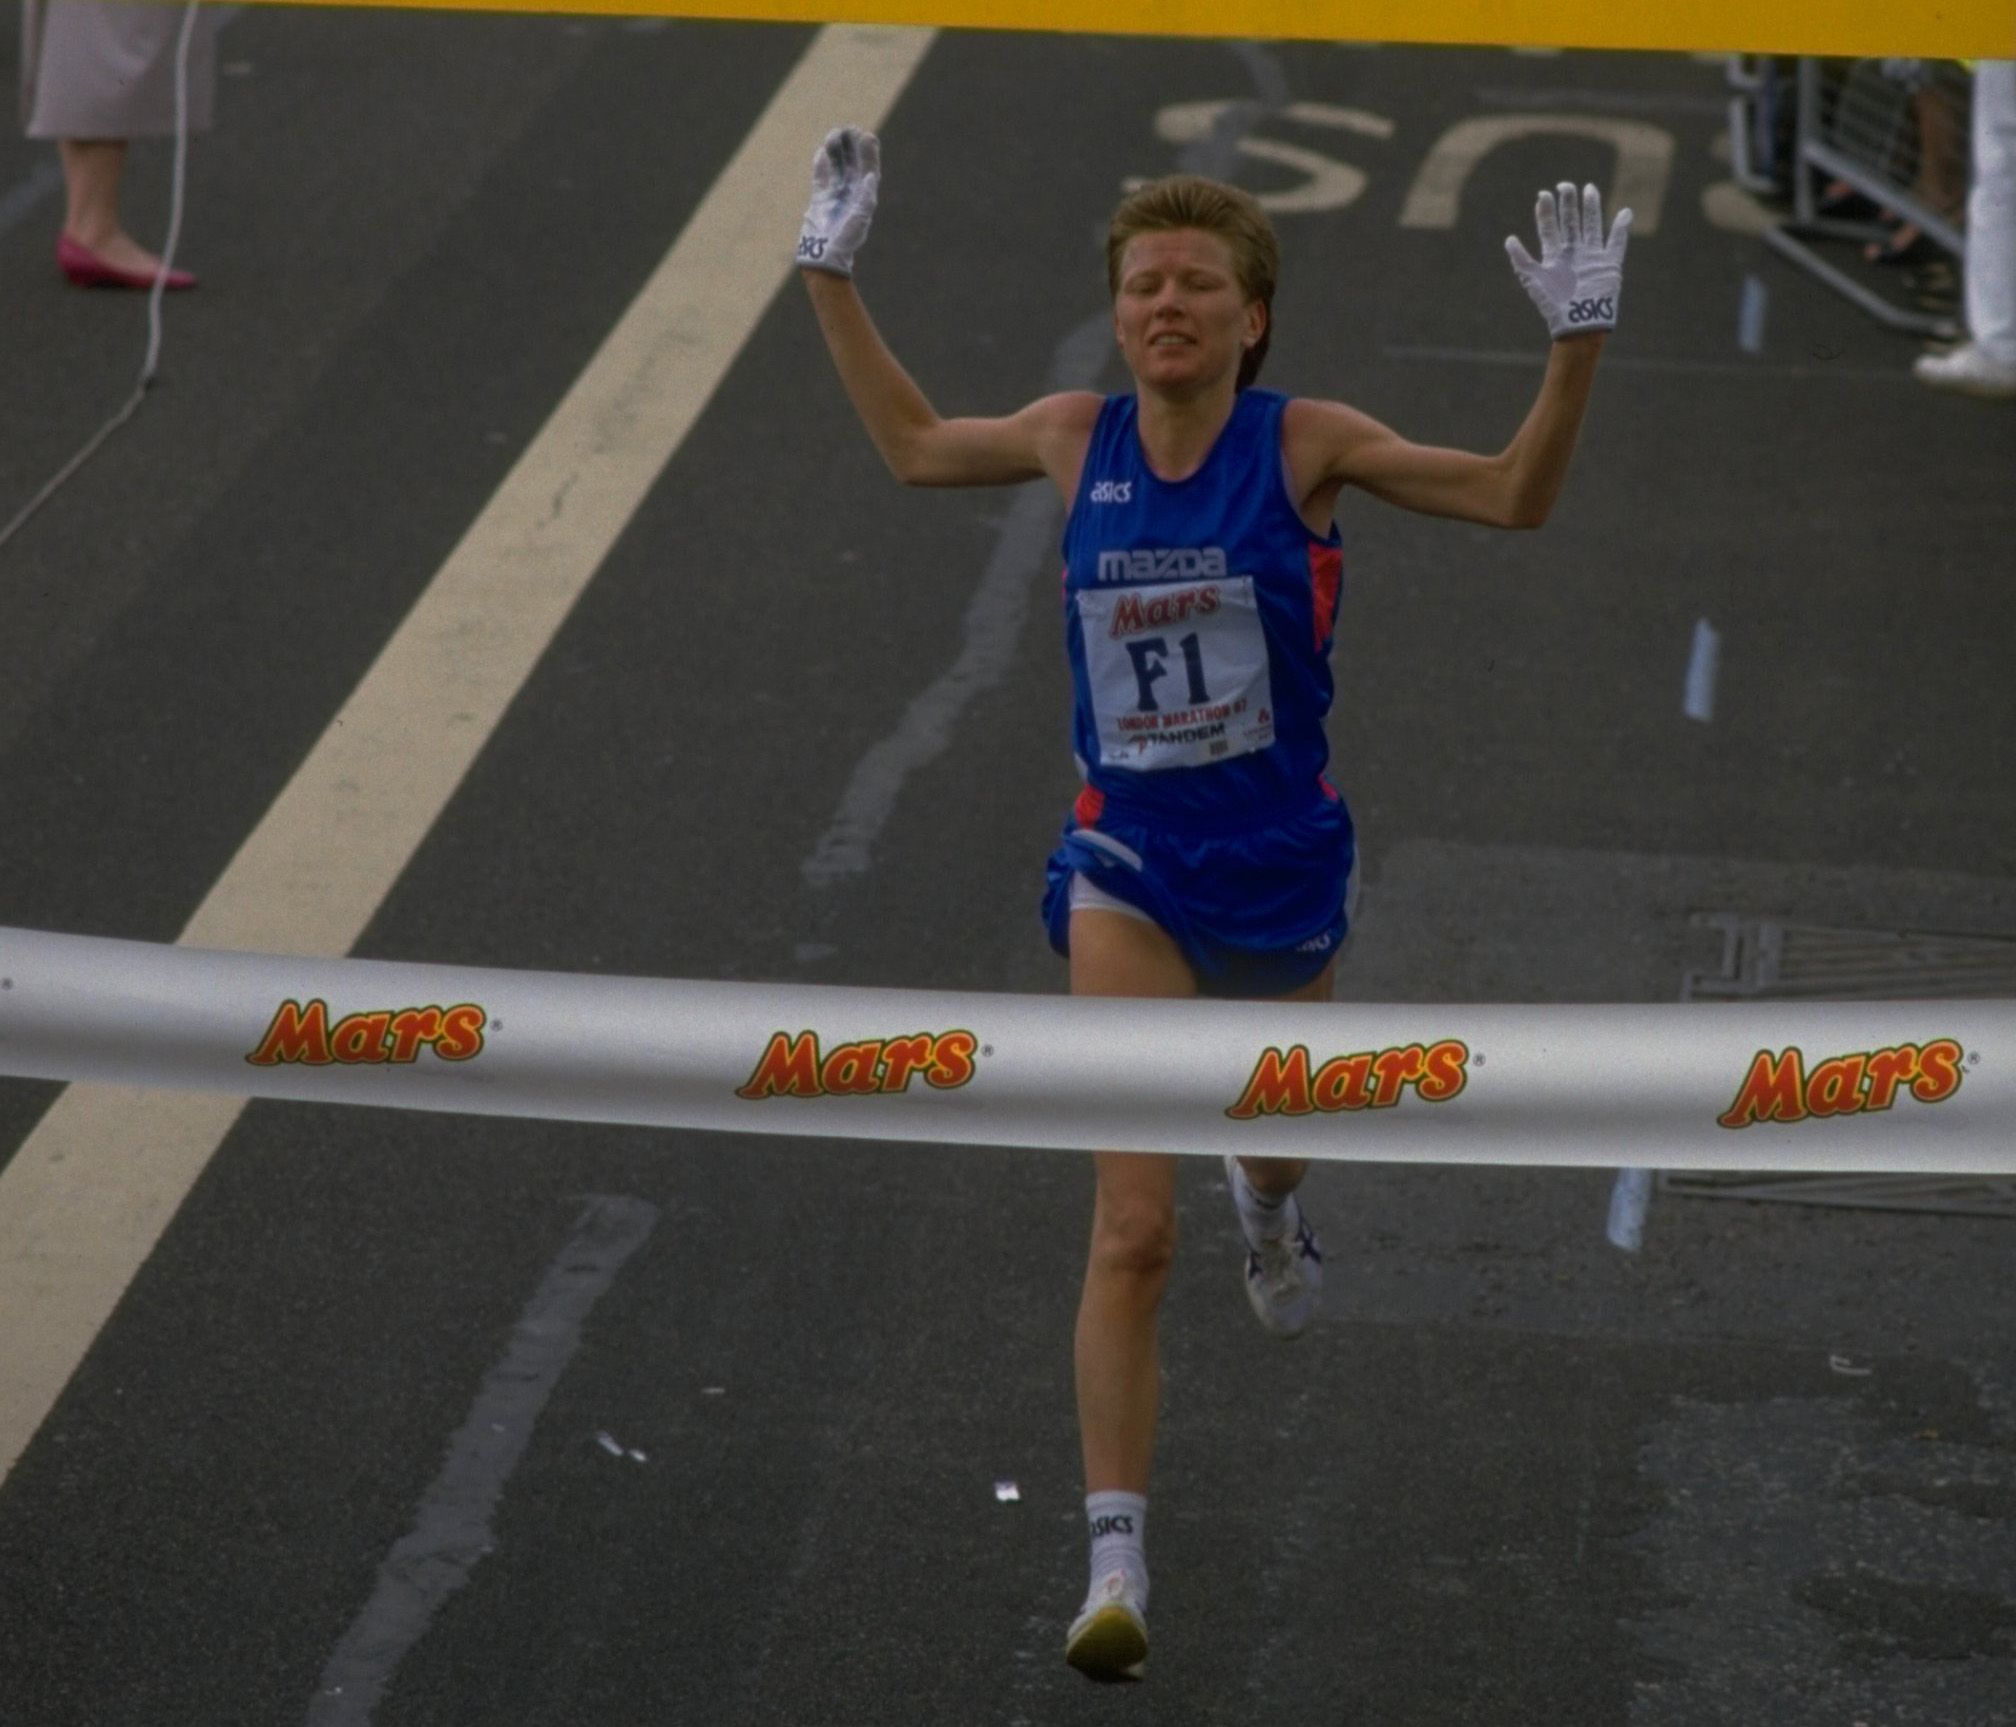 Ingrid Kristiansen wins the London Marathon in 1987